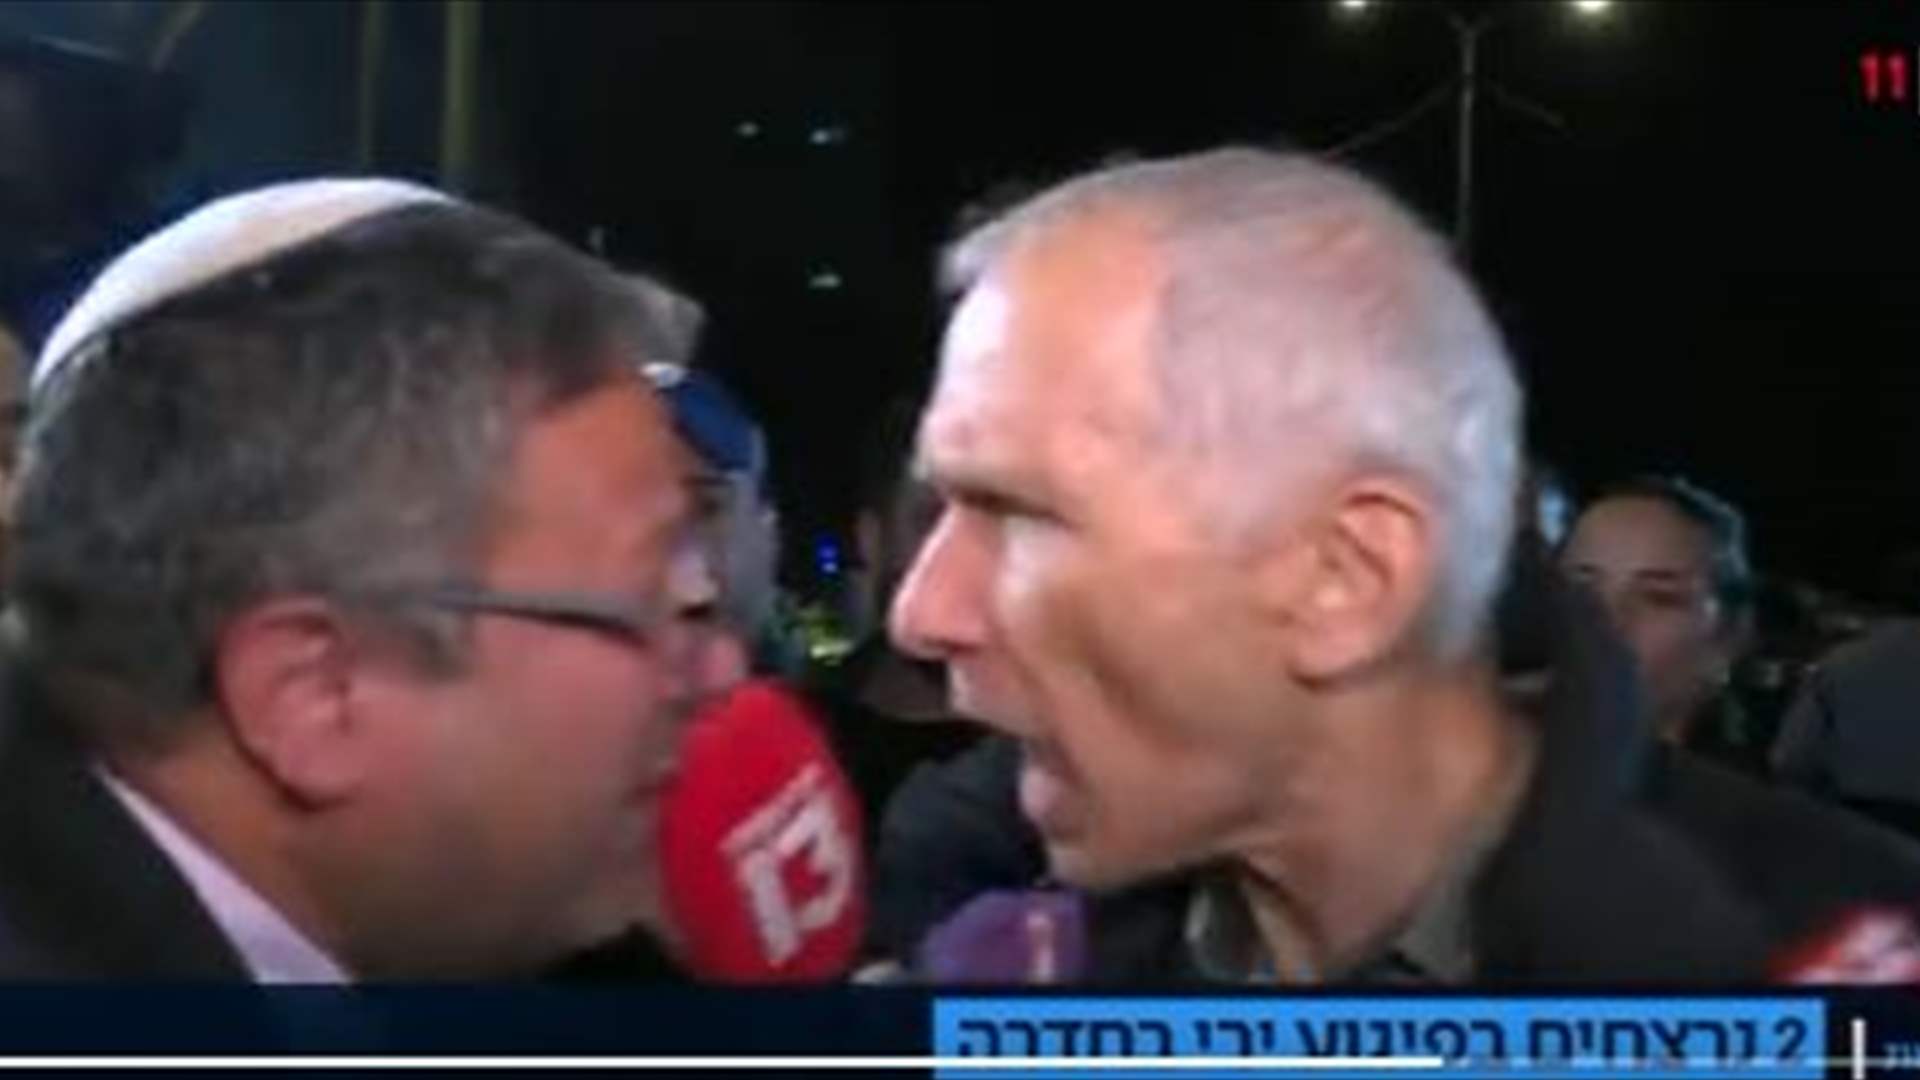  فيديو لمشادة كلامية بين مسؤولين اسرائيليين على الهواء...ما صحته؟